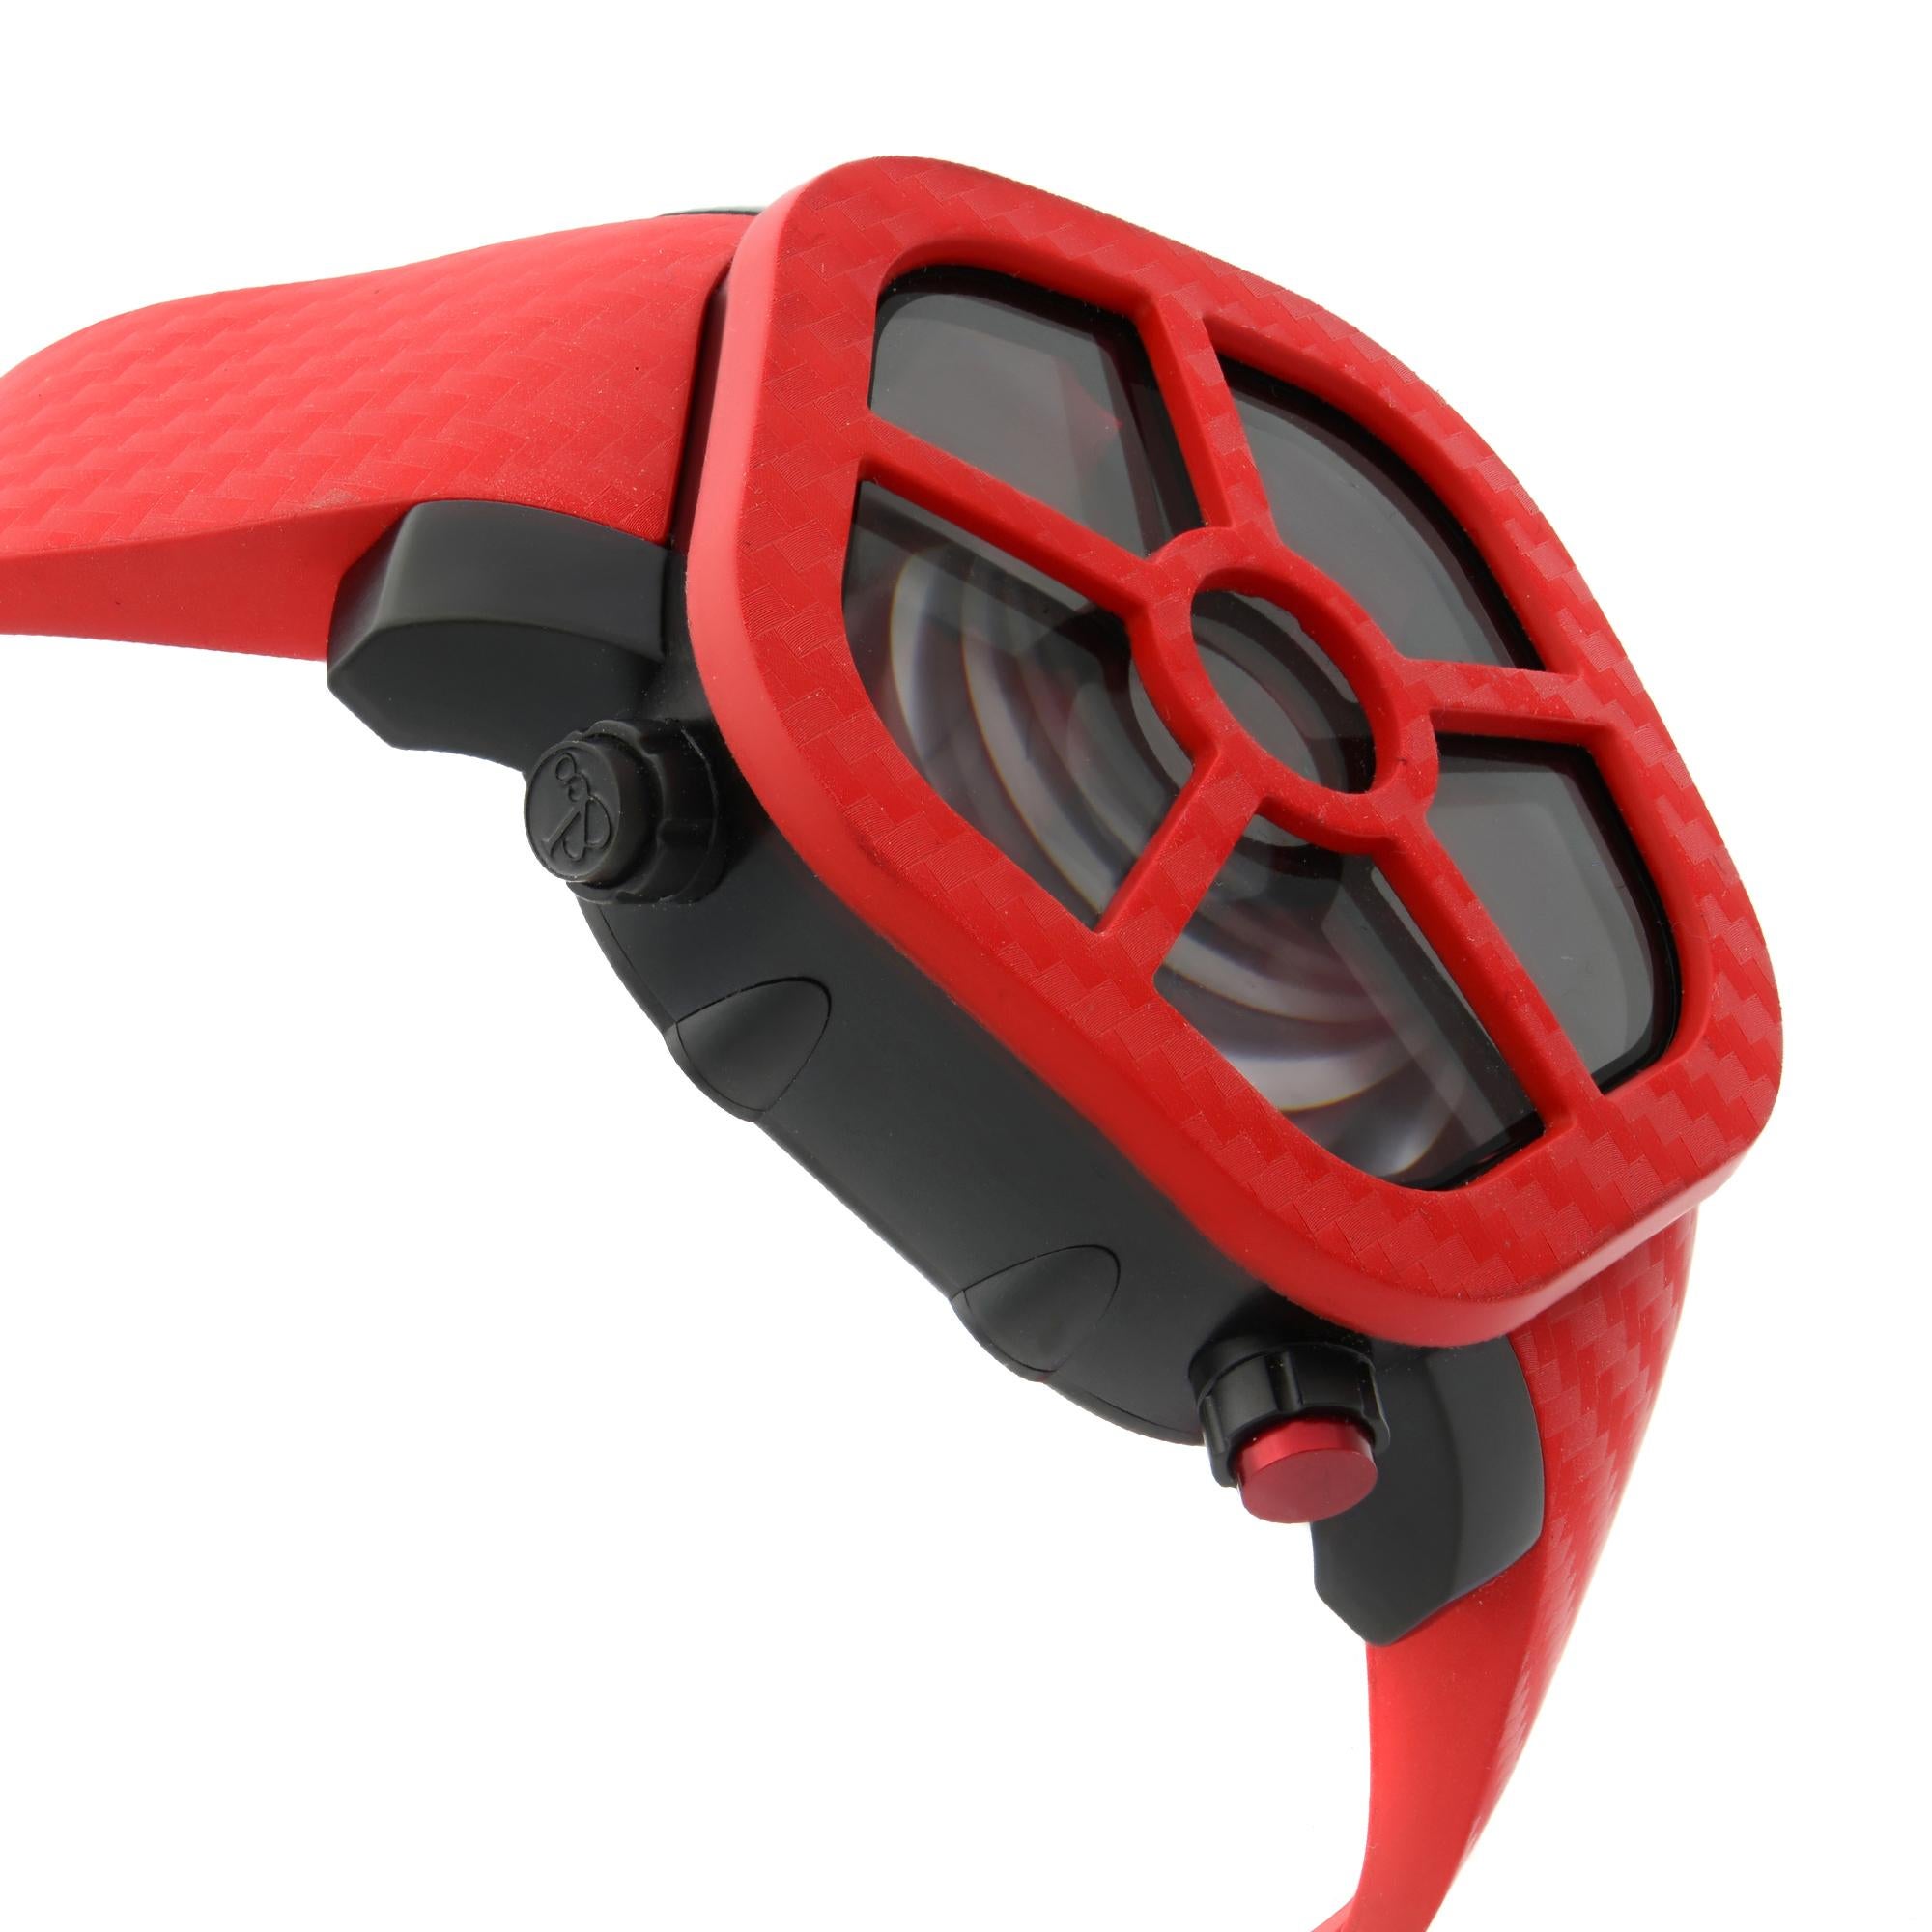 Jacob & Co. Ghost Carbon Bezel Red Quartz Men's Watch GH100.11.NS.PC.ANA4D 1